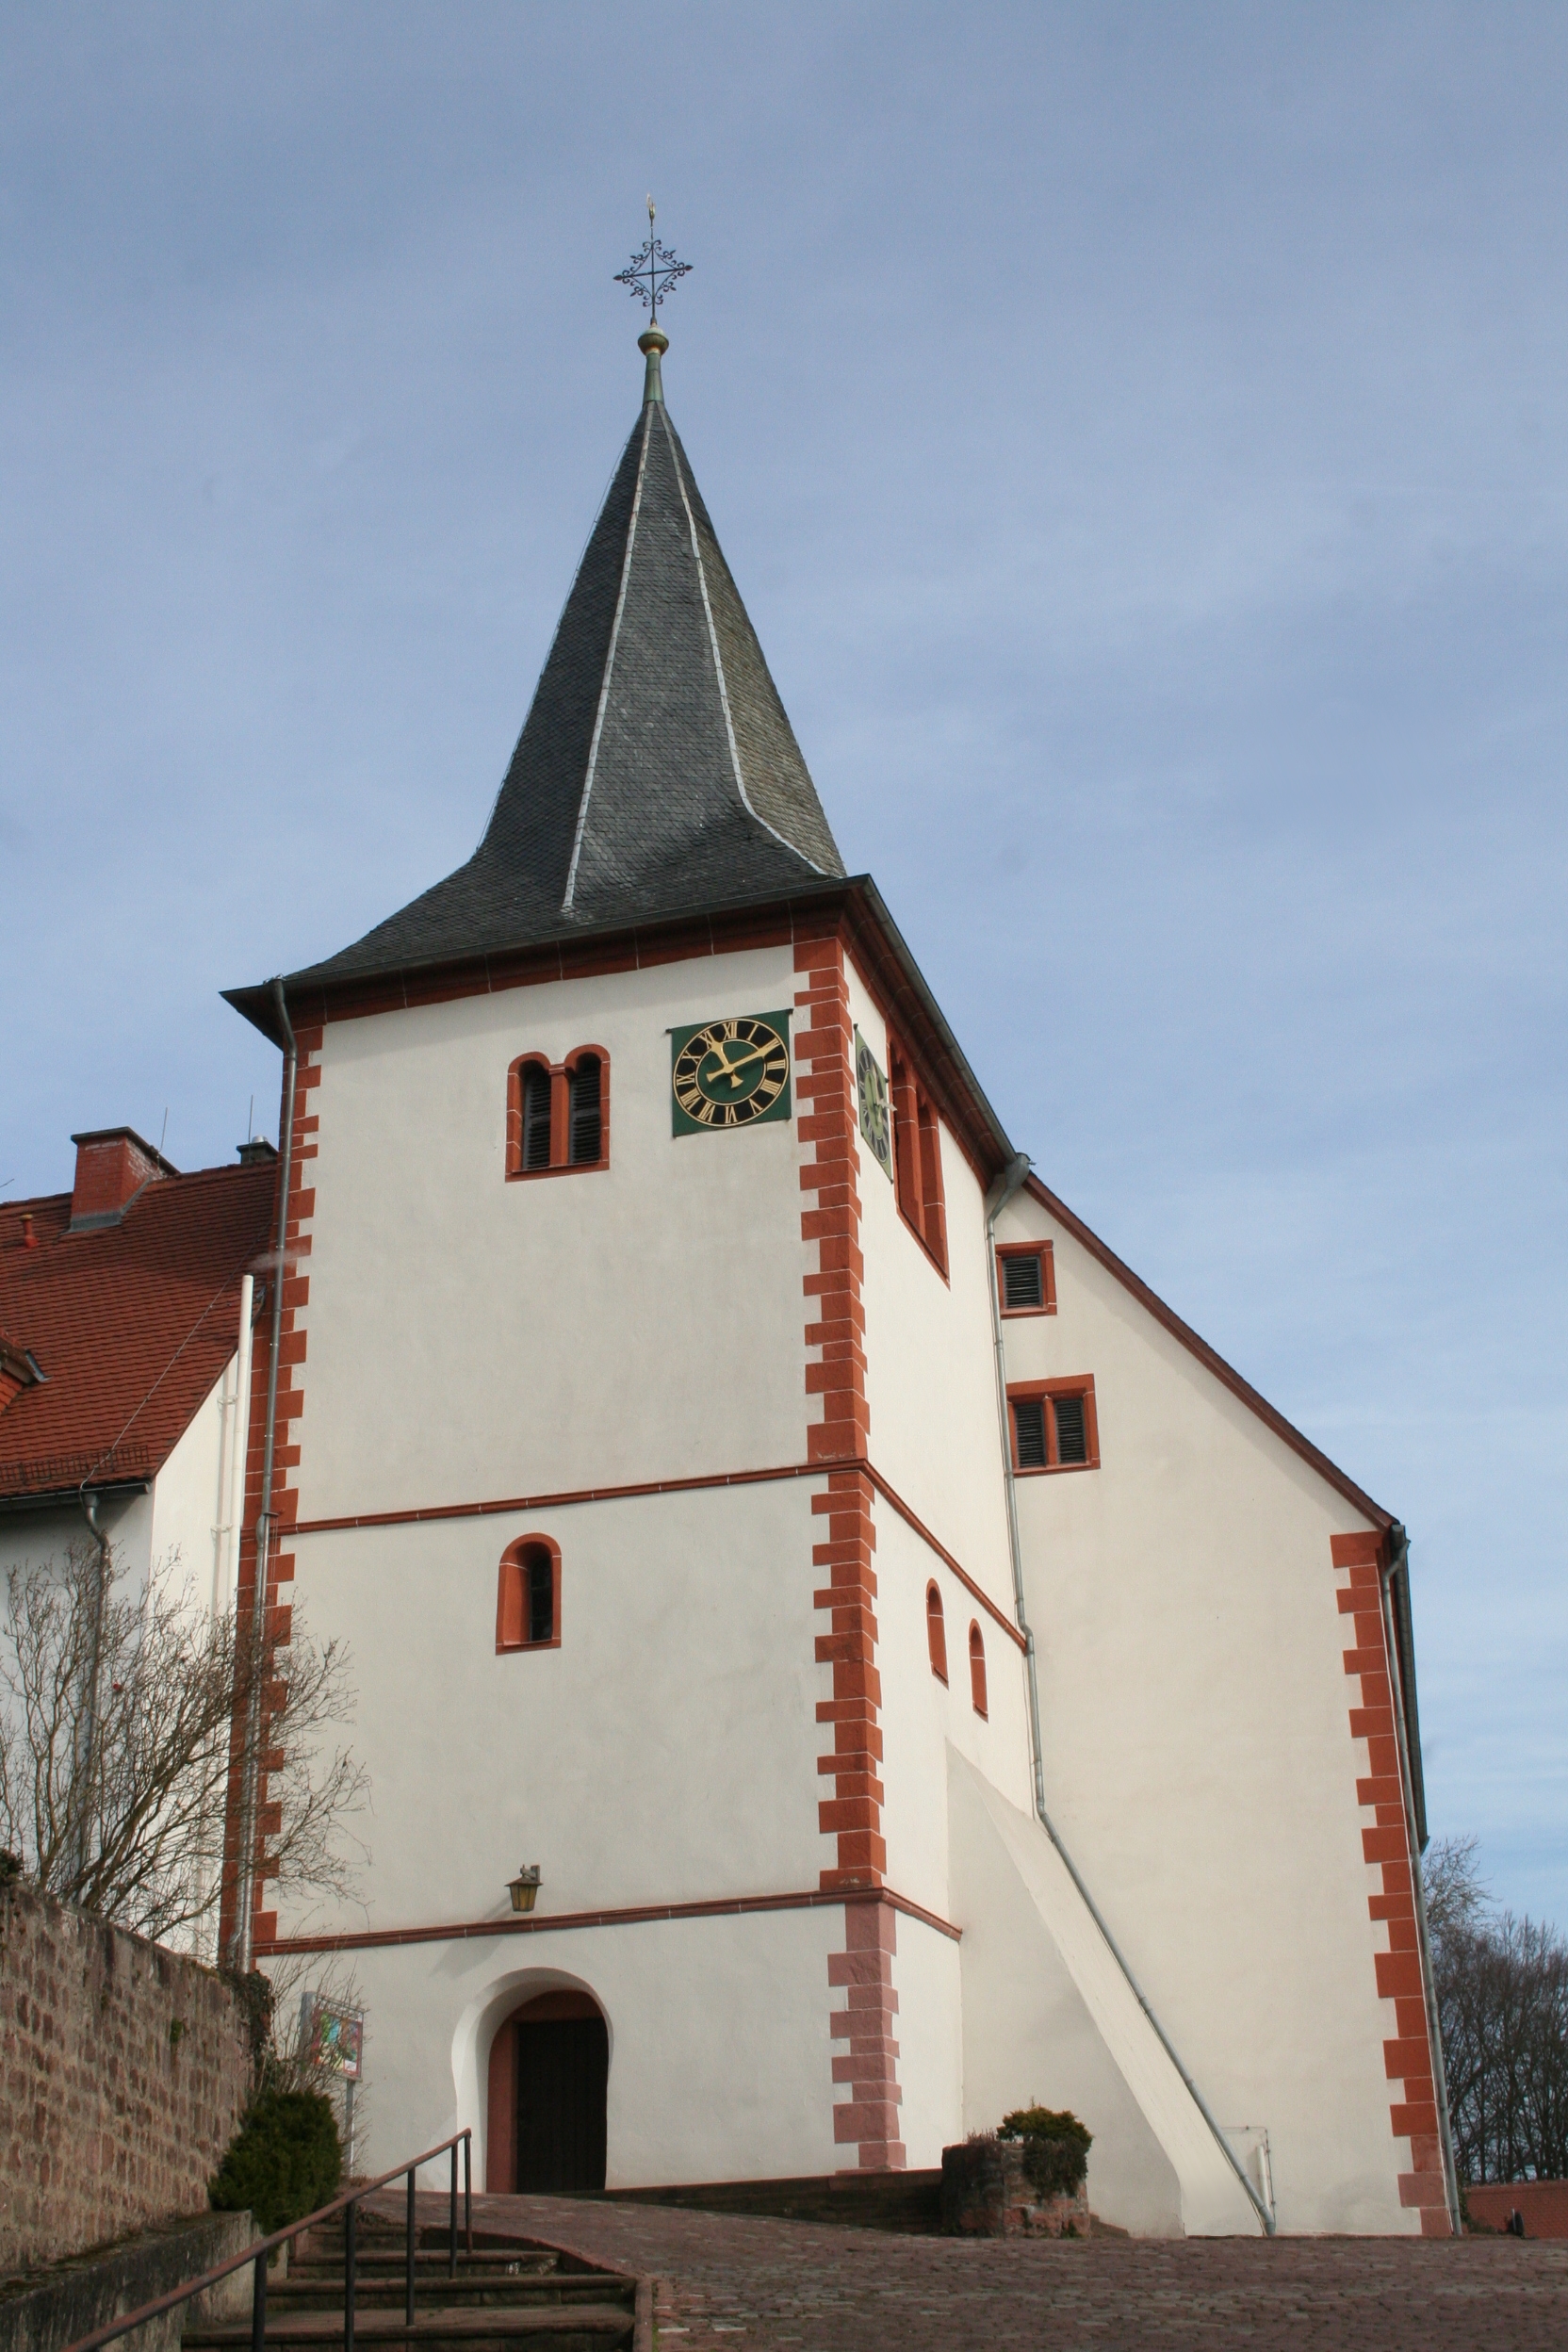 Die Kirche in Höchst i. Odw. gehört zum Gebäudekomplex des ehemaligen Klosters. Sie steht auf einer kleinen Anhöhe, dem Kirchberg, im Zentrum von Höchst. Der Turm stammt von der alten romanischen Klosterkirche. Das Kirchenschiff war zur Zeit, als die Refo